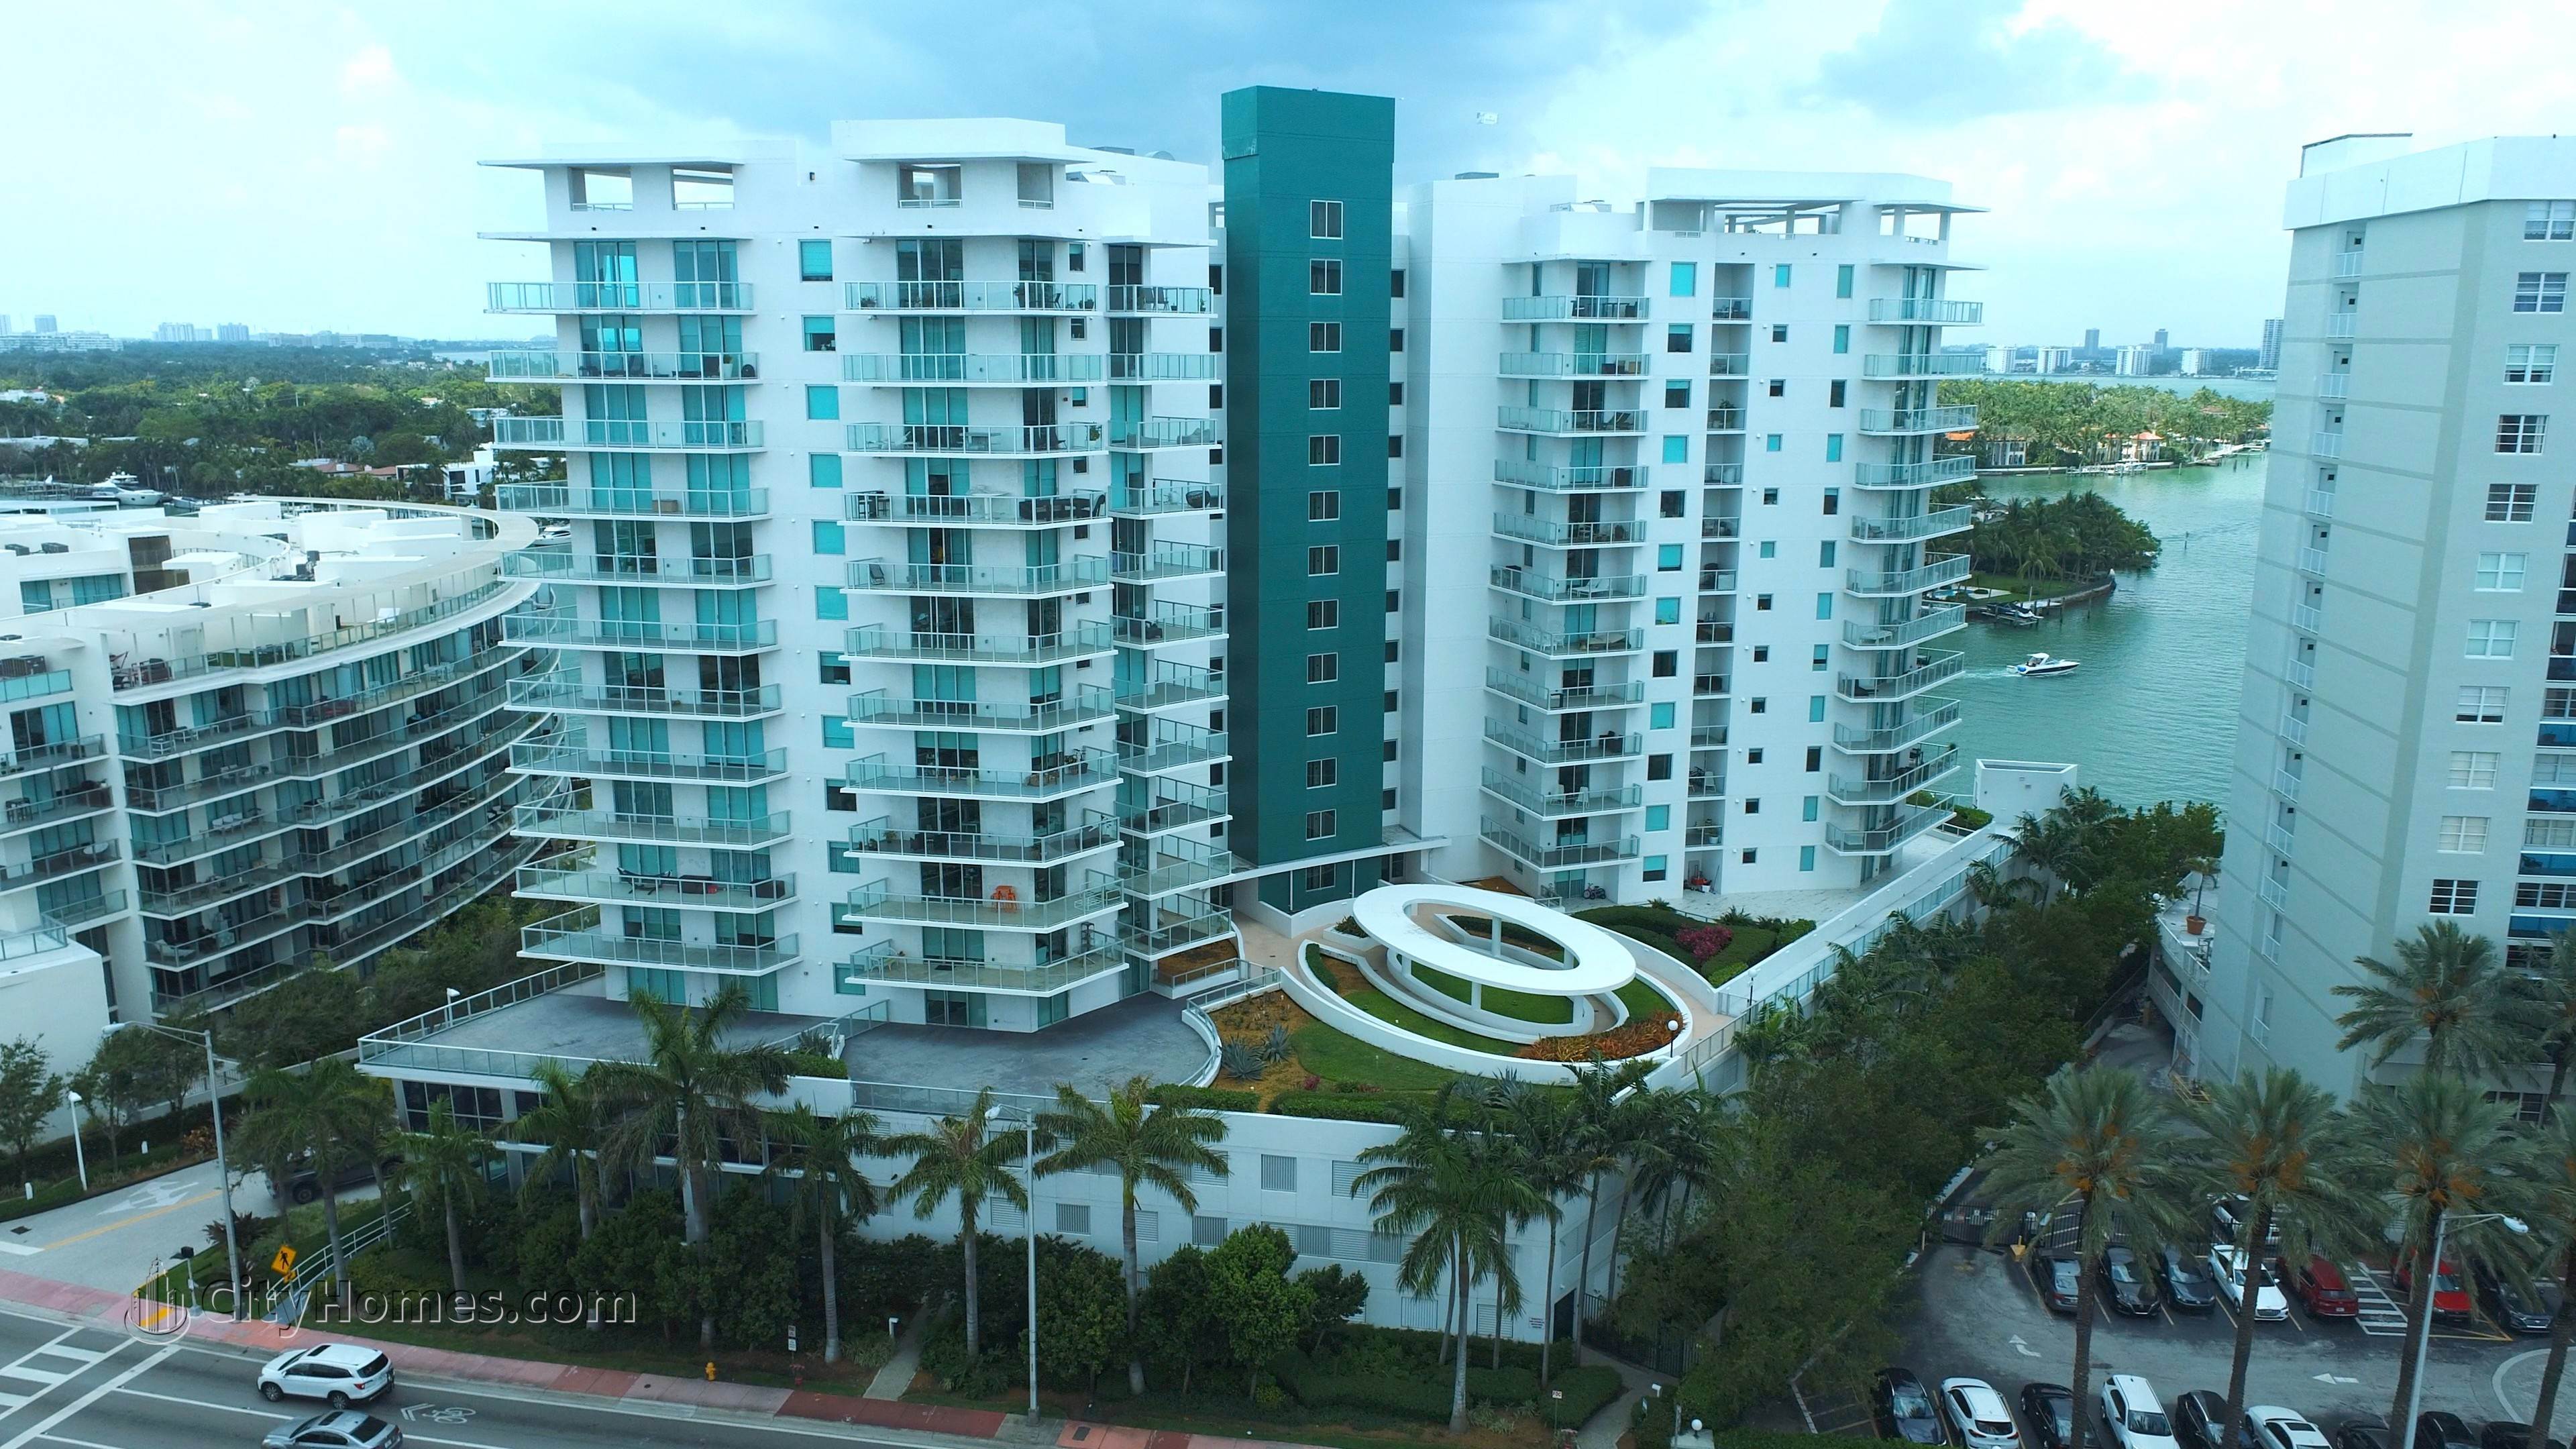 EDEN HOUSE building at 6700 Indian Creek Drive, North Beach, Miami Beach, FL 33141